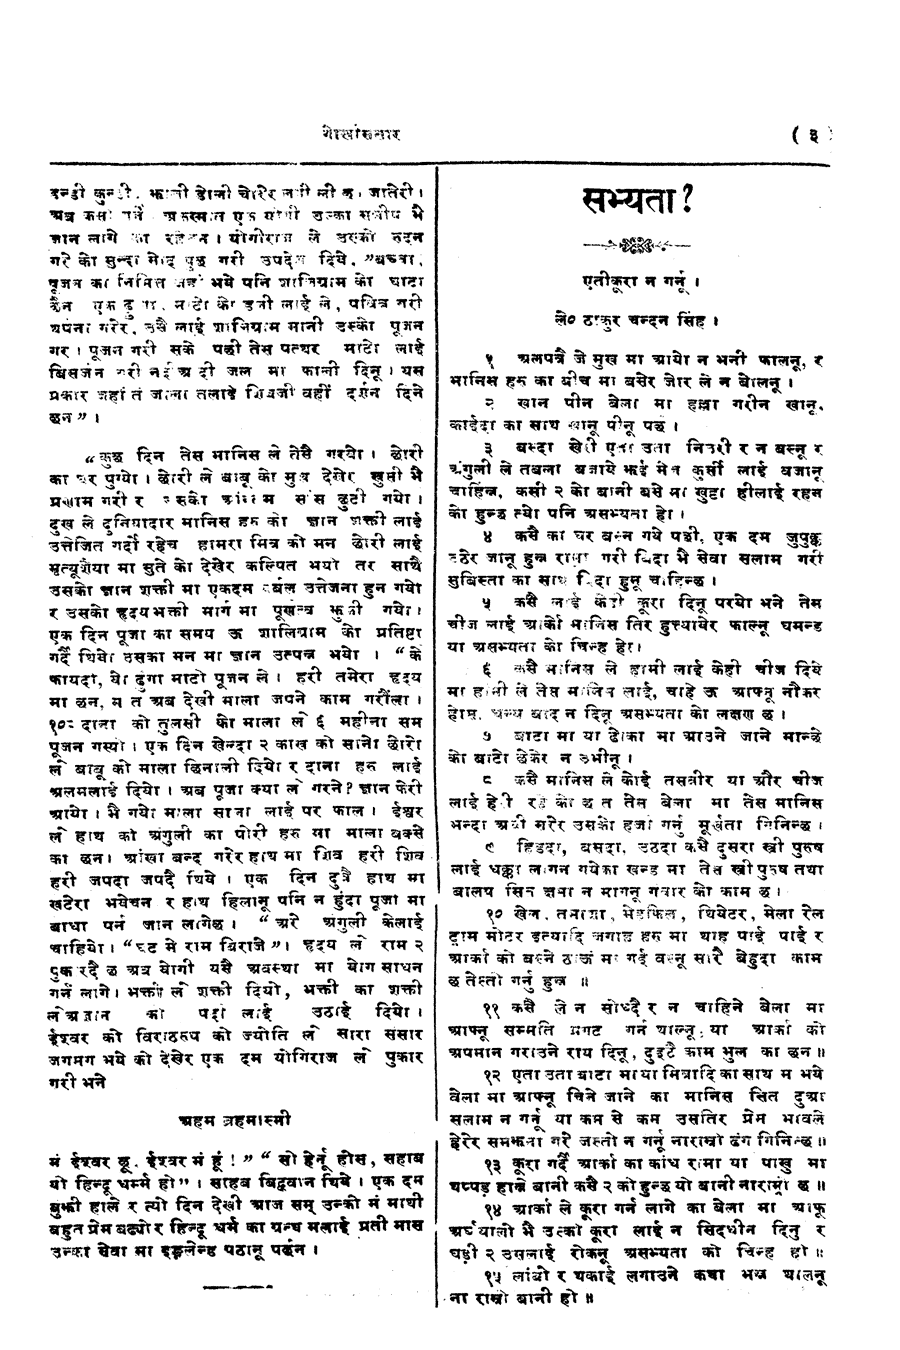 Gorkha Sansar, 27 April 1928, page 3